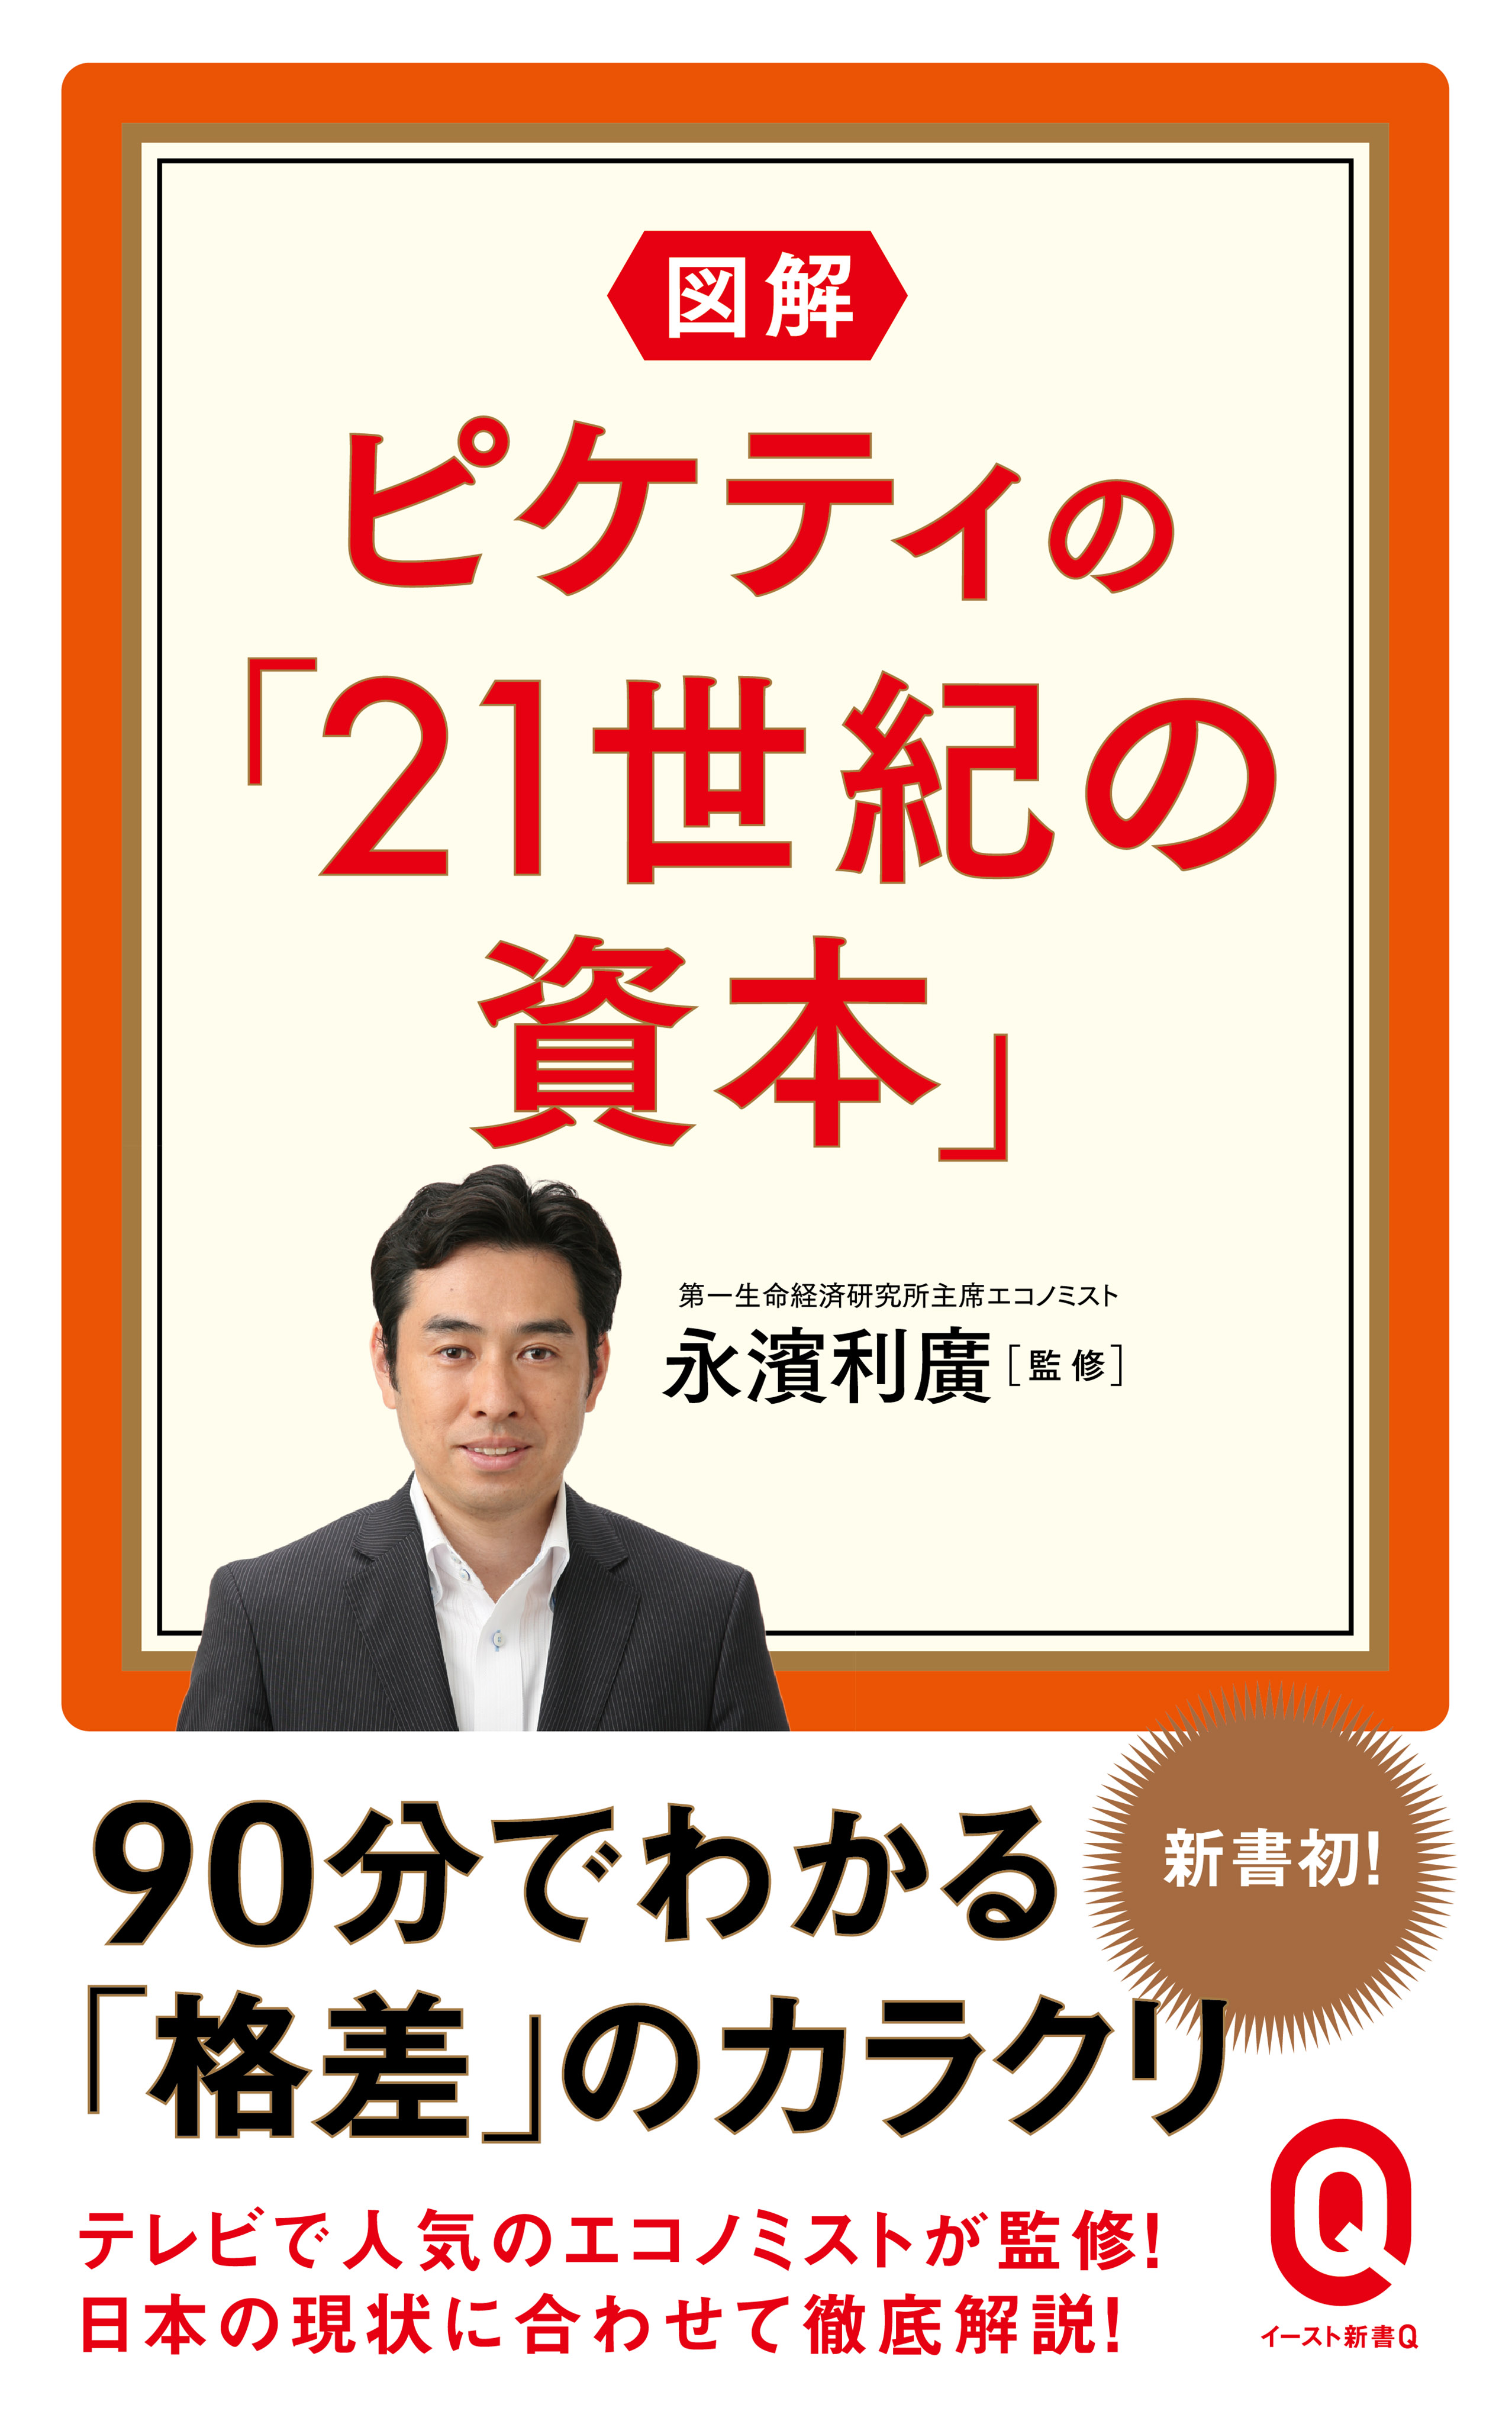 図解 ピケティの「21世紀の資本」 - 永濱利廣 - ビジネス・実用書 